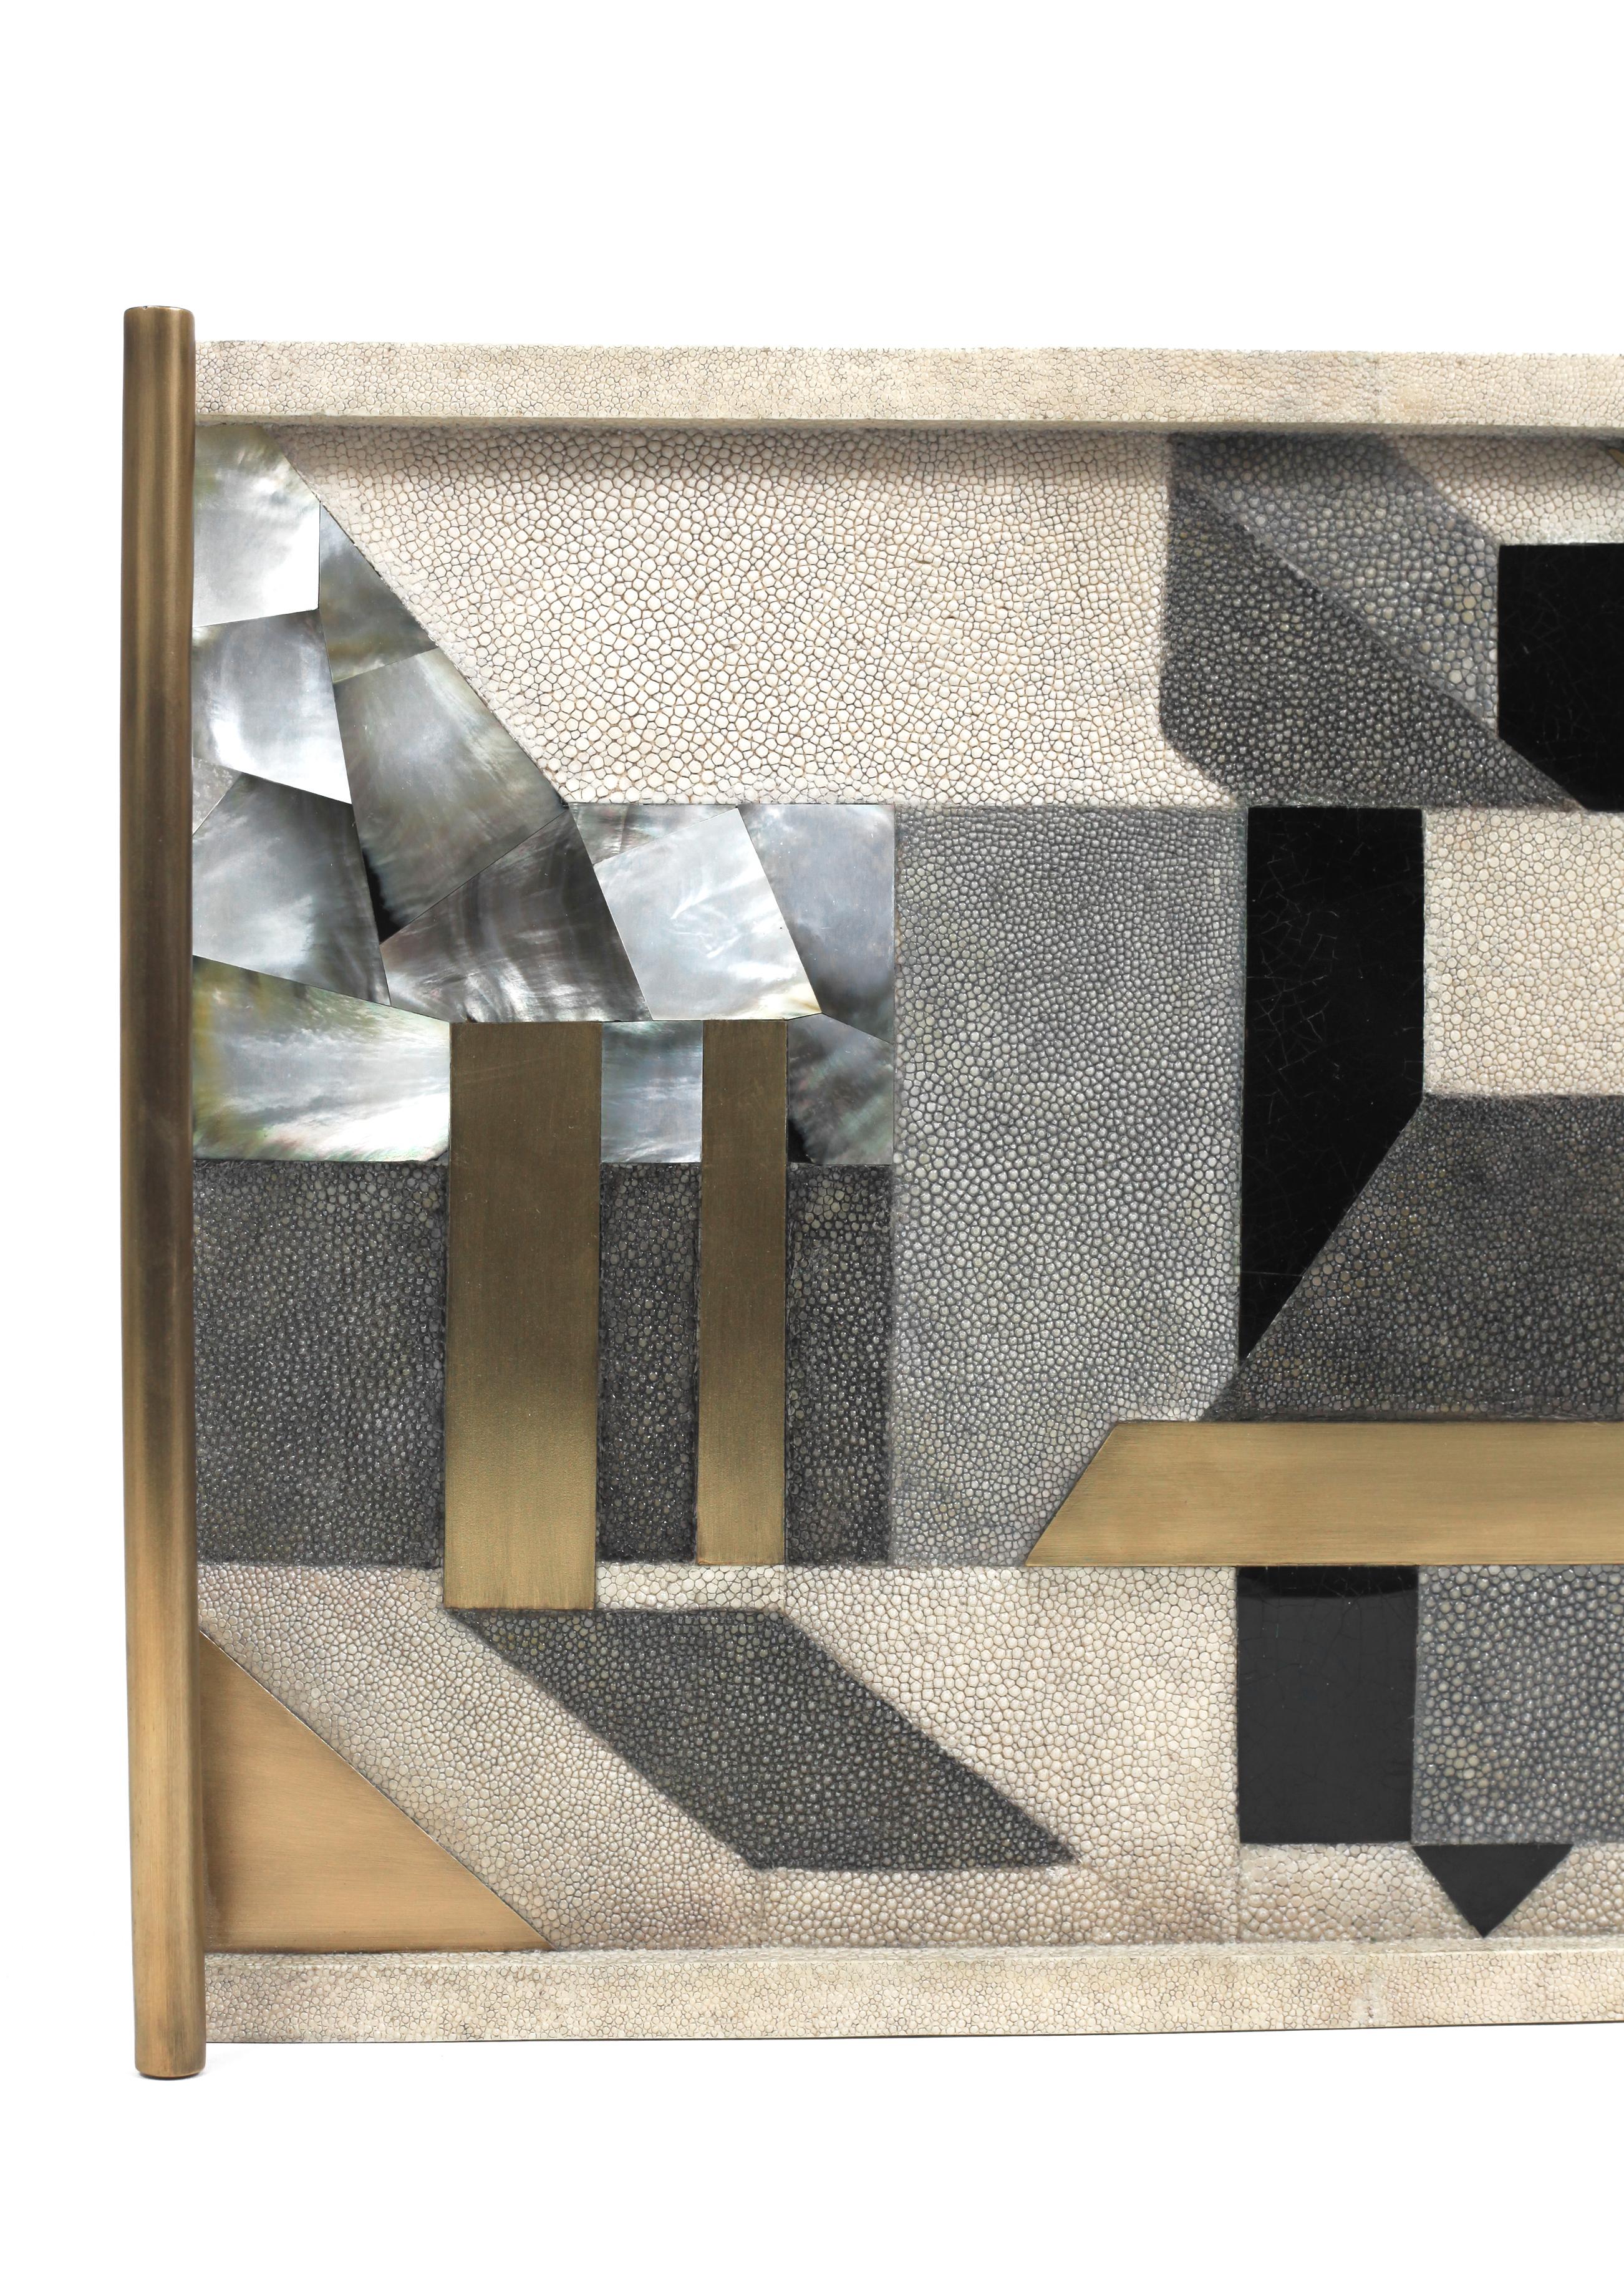 Ein klassisches, rechteckiges Tablett in neuem Gewand: Dieses geometrische Tablett von Kifu Paris mit Intarsien aus Chagrin, Muscheln und Messing in Bronze-Patina-Optik ist in jedem Raum ein beeindruckendes Tischobjekt. Die Messinggriffe sind